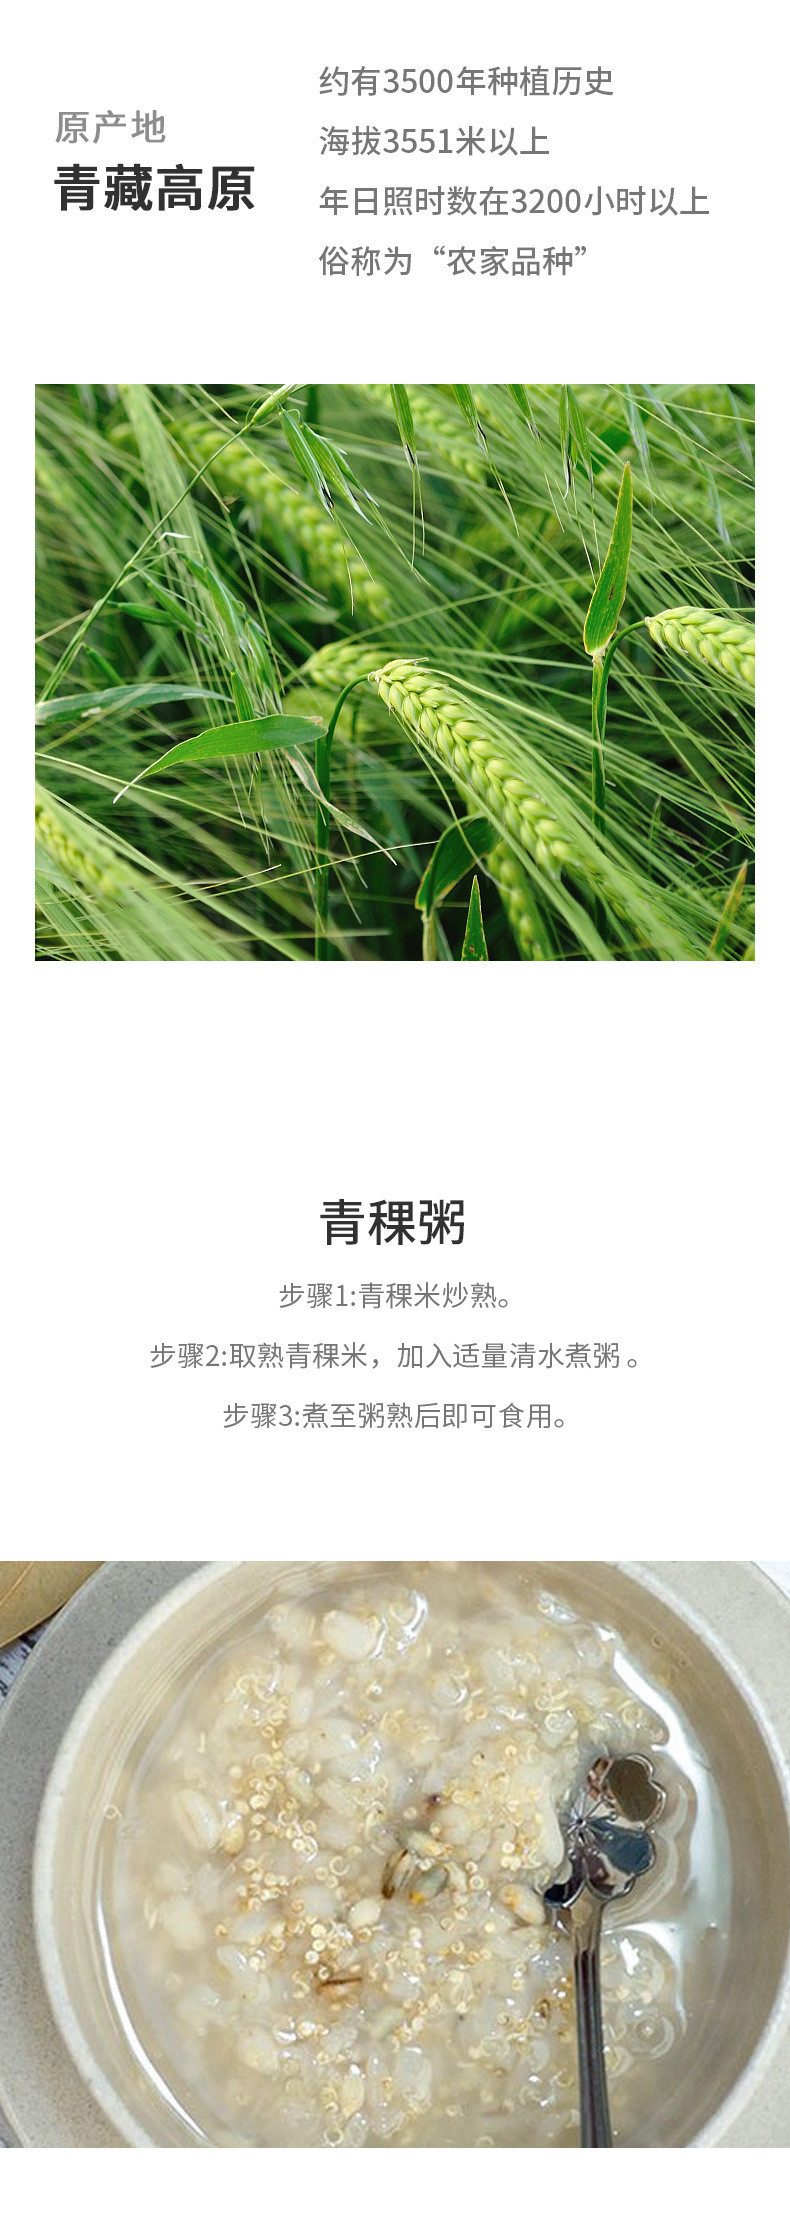 鹤来香 青藏高原特产五谷杂粮 青稞米500克/袋